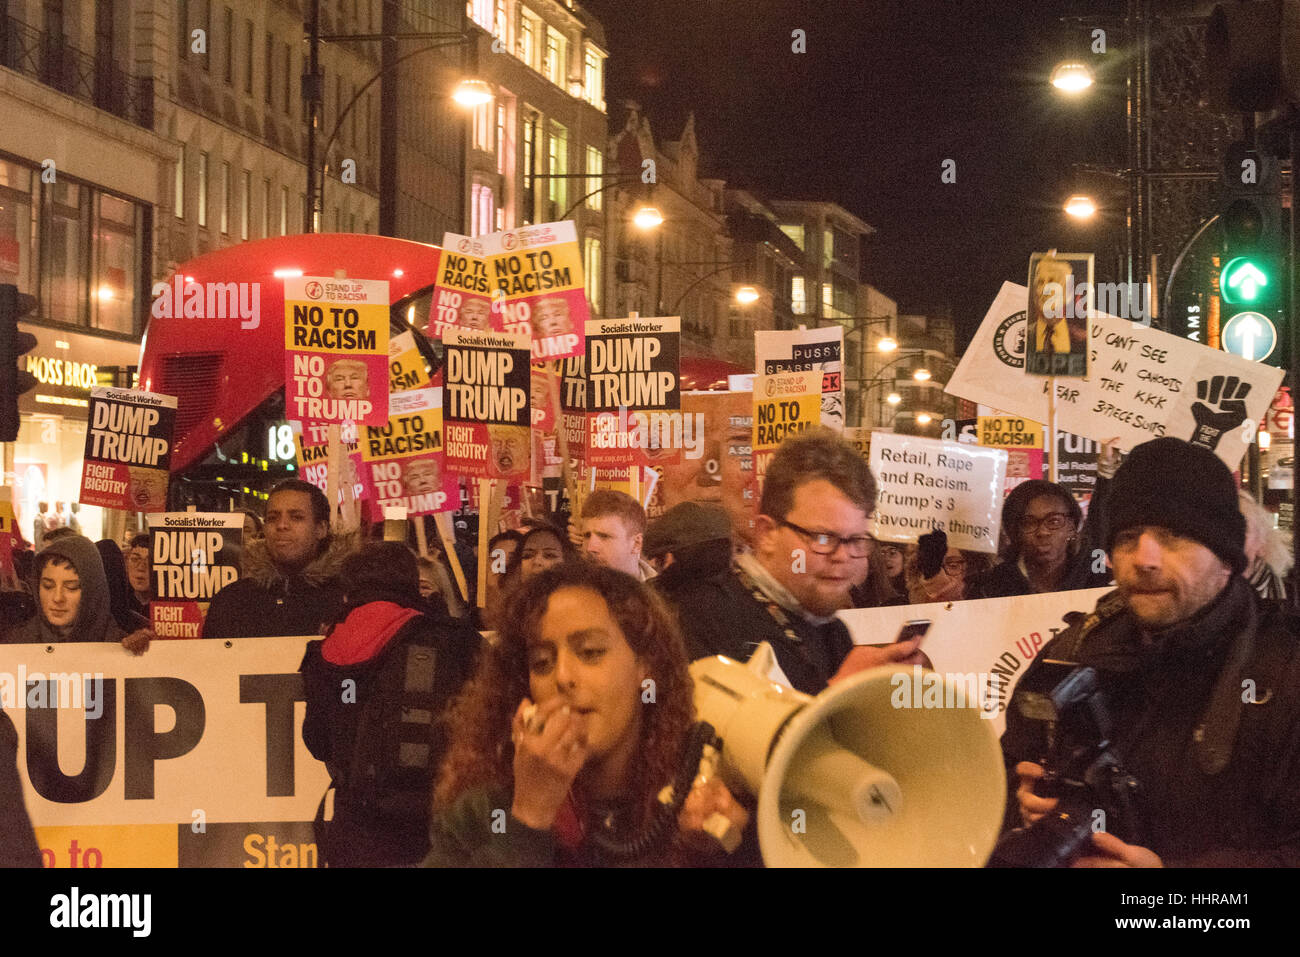 Londres, Royaume-Uni. Le 20 janvier, 2017. Les manifestants occupent une jonction de route à l'Atout anti-manifestation et une marche devant l'ambassade américaine à Londres. Crédit : Ian Davidson/Alamy Live News Banque D'Images